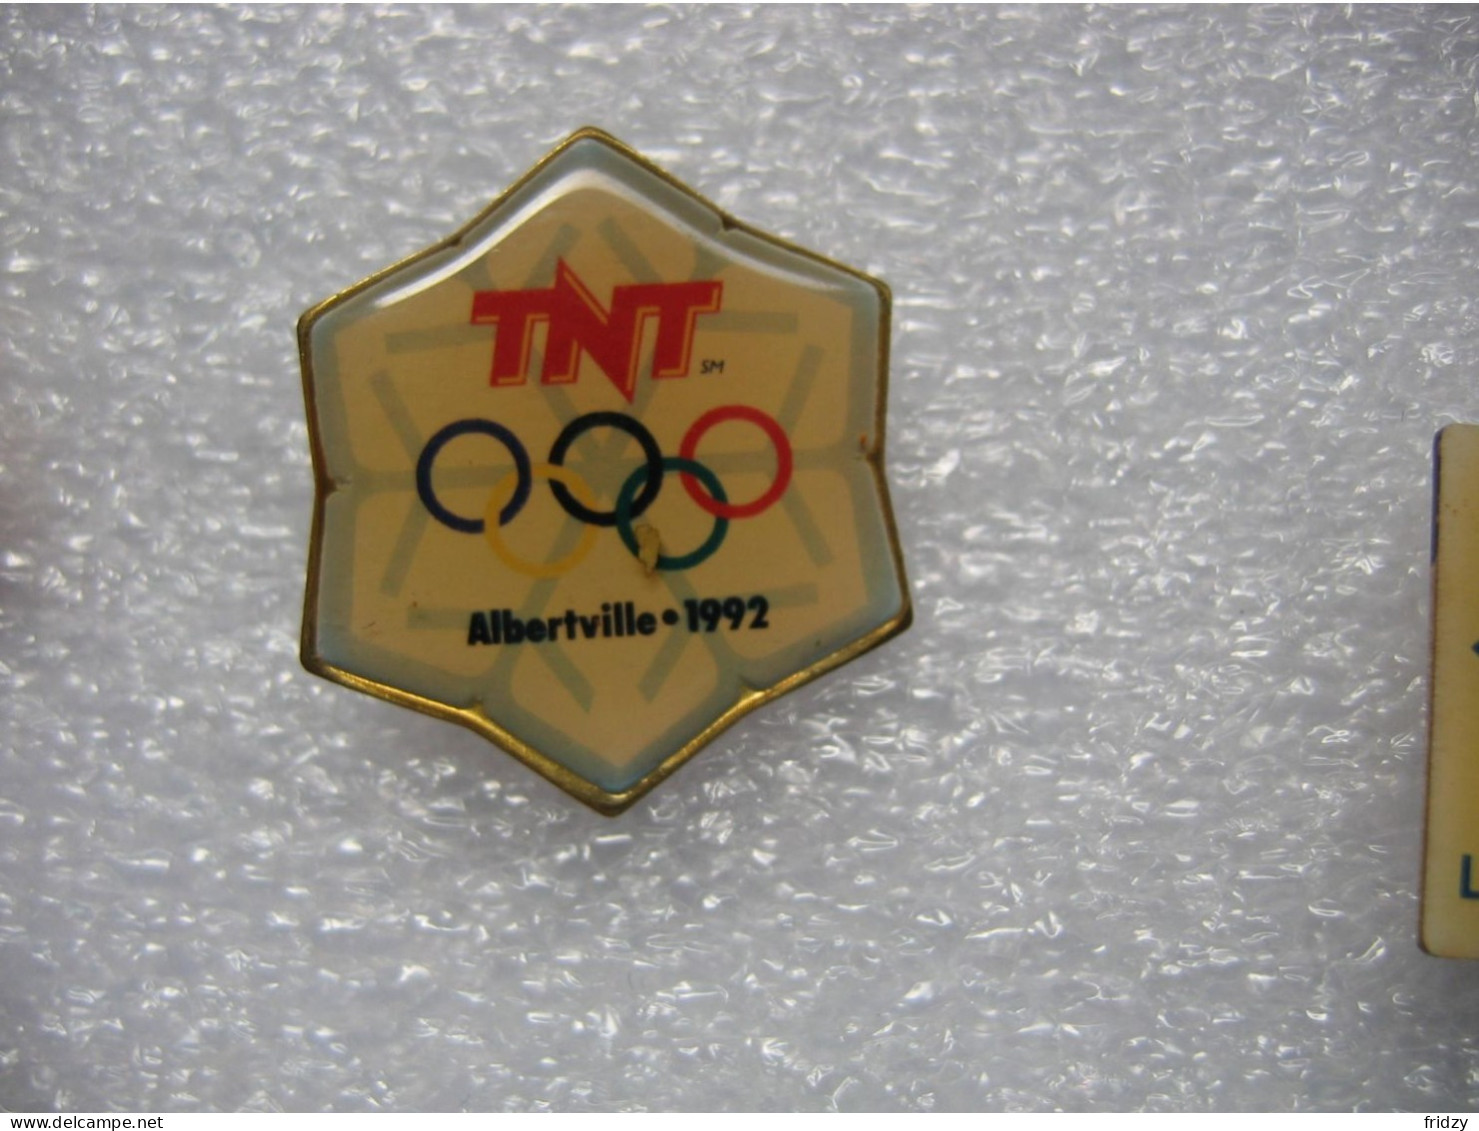 Pin's Des Jeux Olympiques D'ALBERTVILLE En 1992, Sponsorisés Par La TNT - Olympic Games